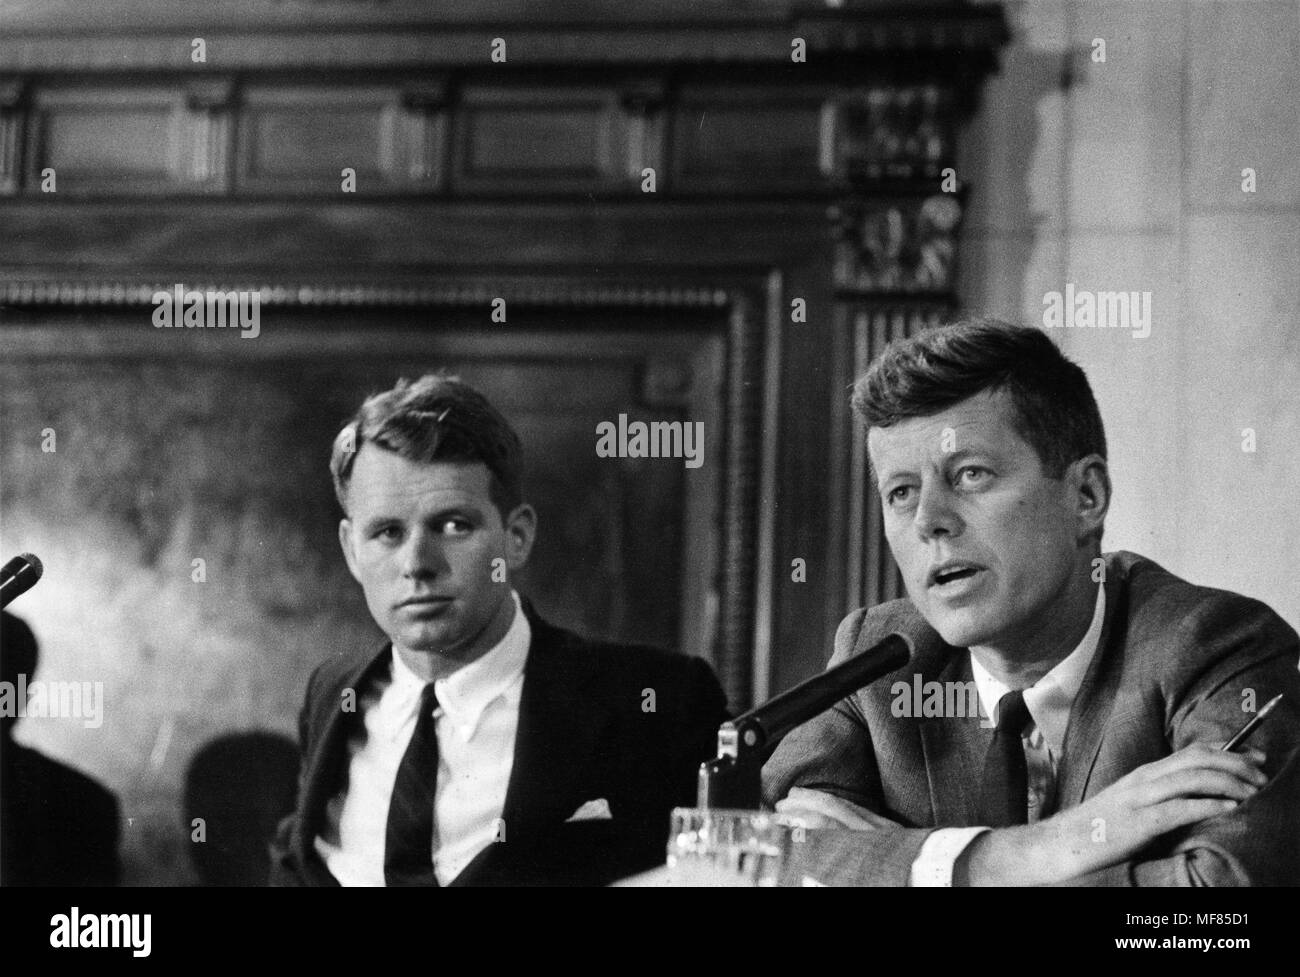 PX65-105:470 5/1957 Robert F. Kennedy e John F. Kennedy durante il McClellan Senato audizioni. Fotografia di Douglas Jones per guardare la rivista in John F. Kennedy Presidential Library and Museum di Boston. Foto Stock